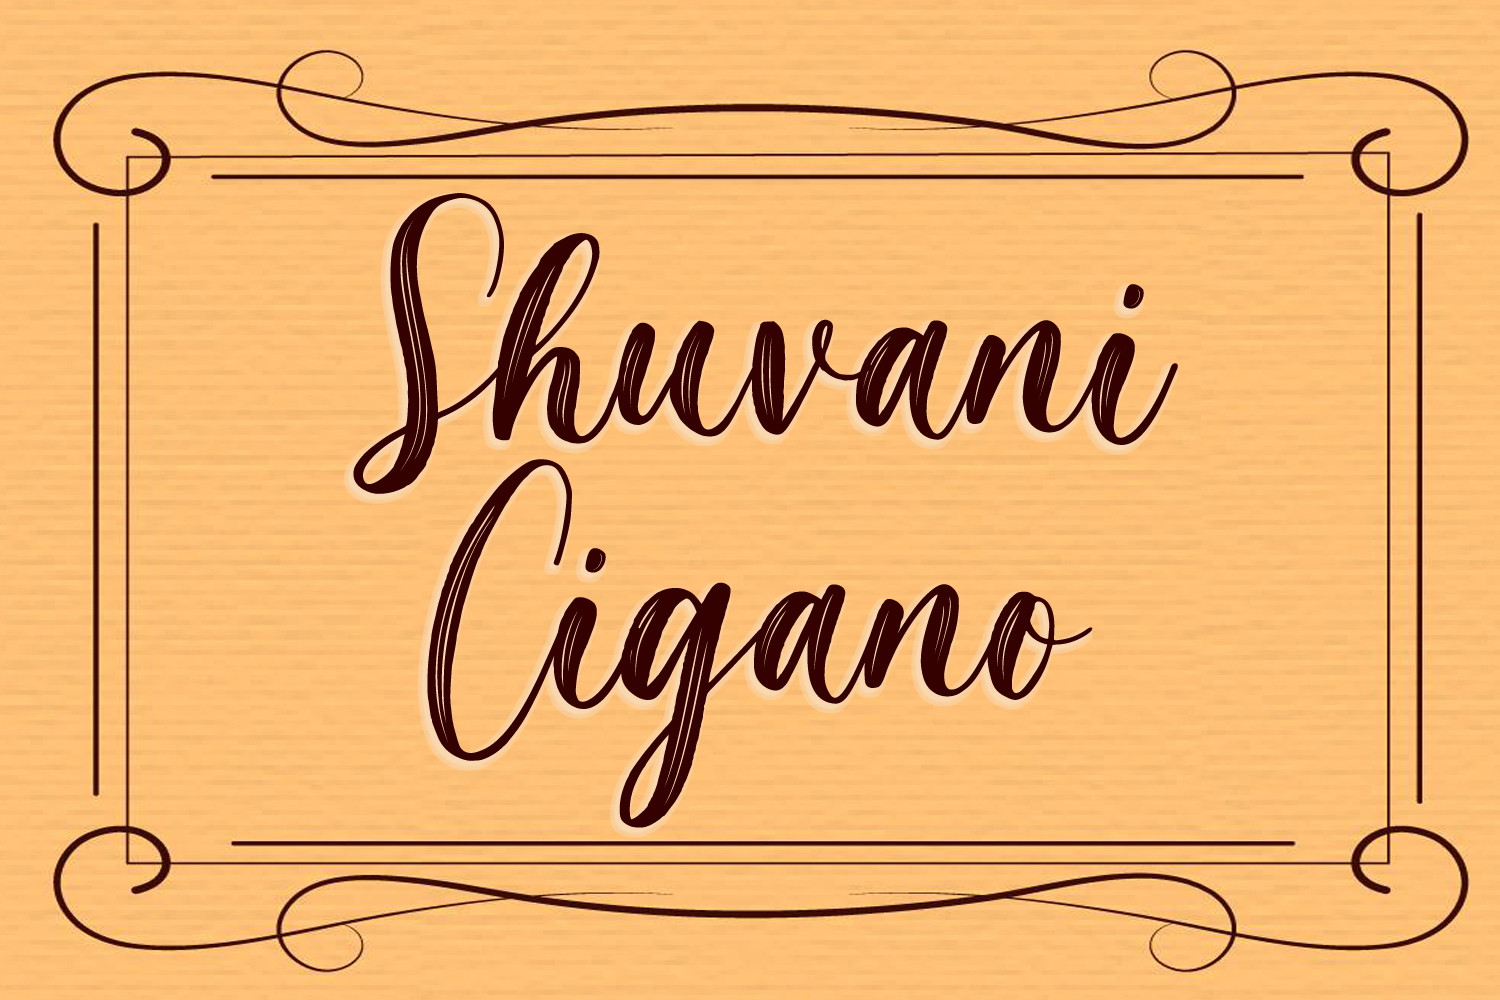 Shuvani Cigano